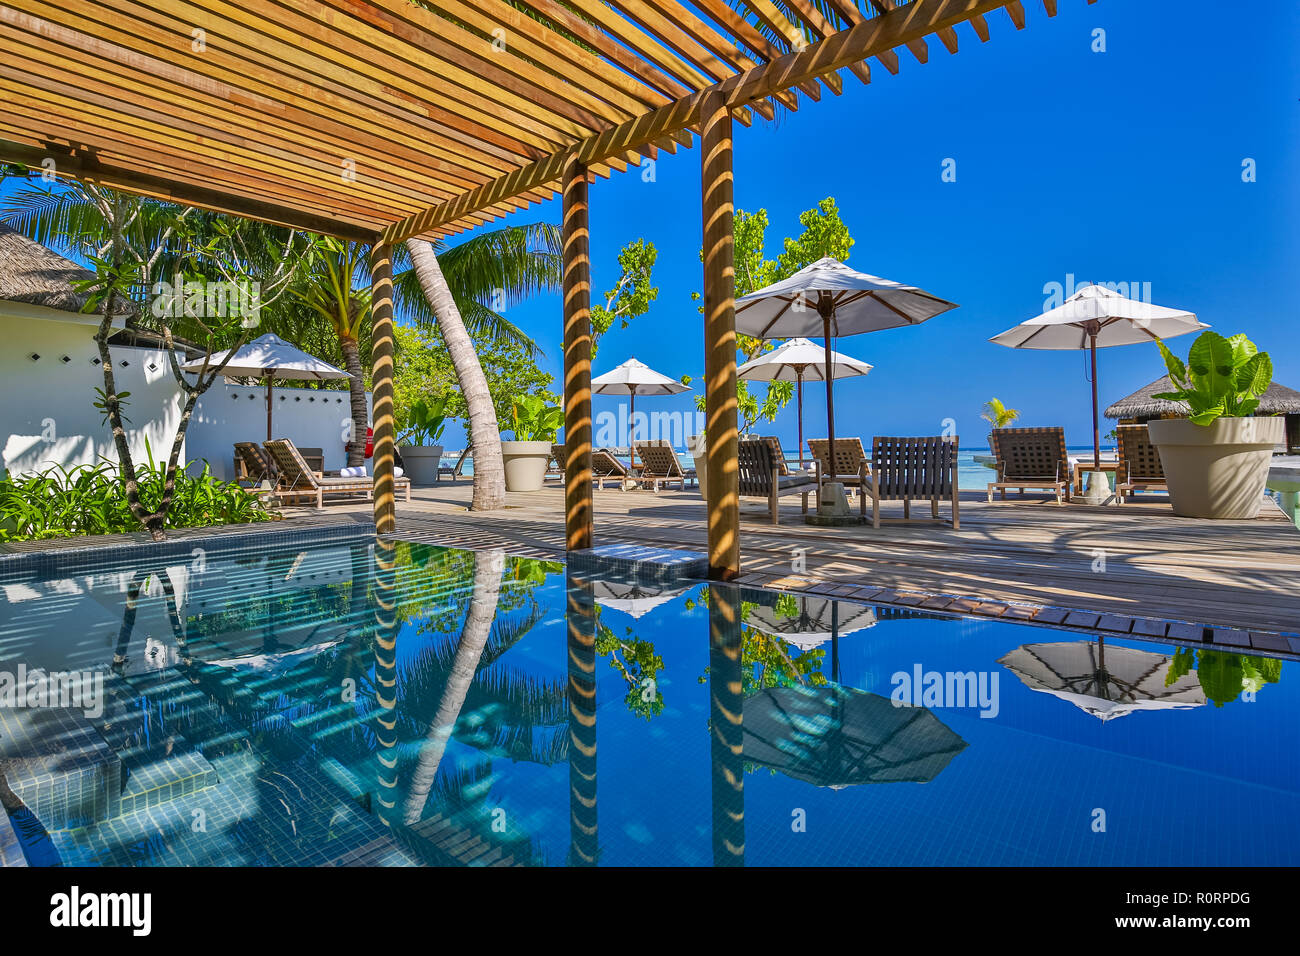 Die Liegestühle am Pool, Spa und Entspannung im Freien Holzterrasse, Palmen und Liegestühlen ausgestattet. Luxuriöses Hotel und Resort entspannende Hintergrund. Stockfoto